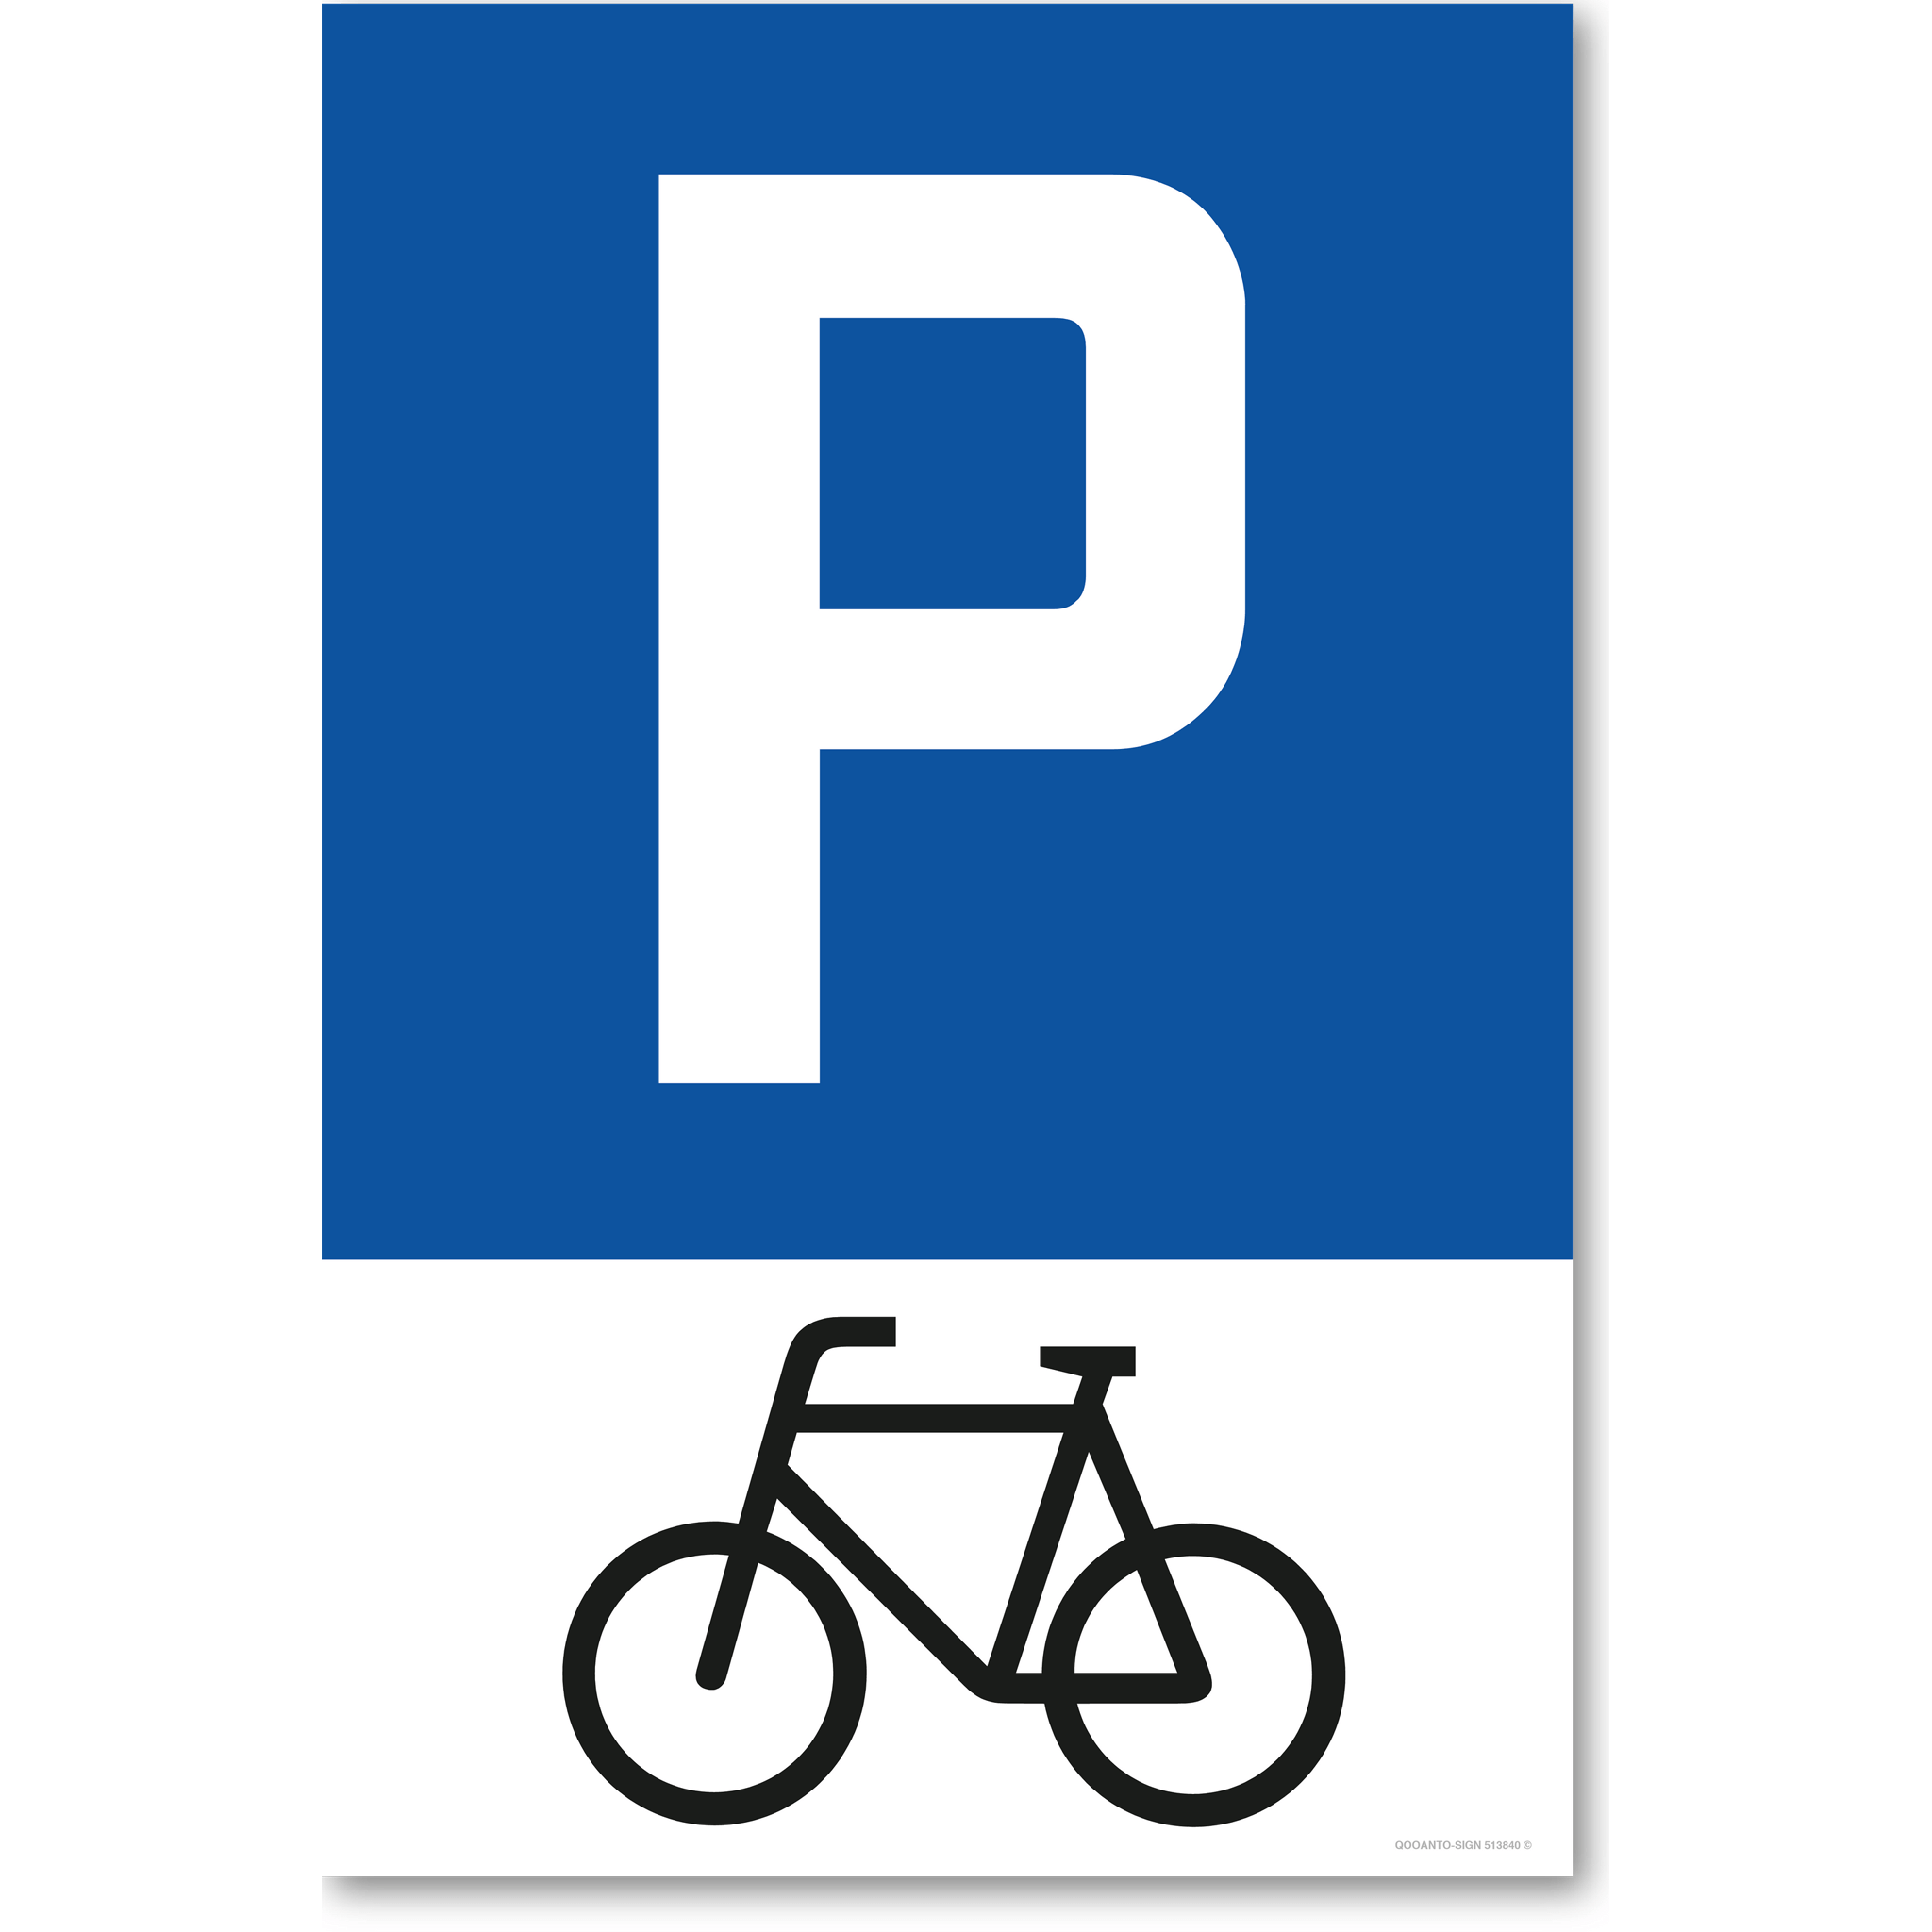 Privatparkplatz - Parkieren verboten - Parkverbotsschild hochformat